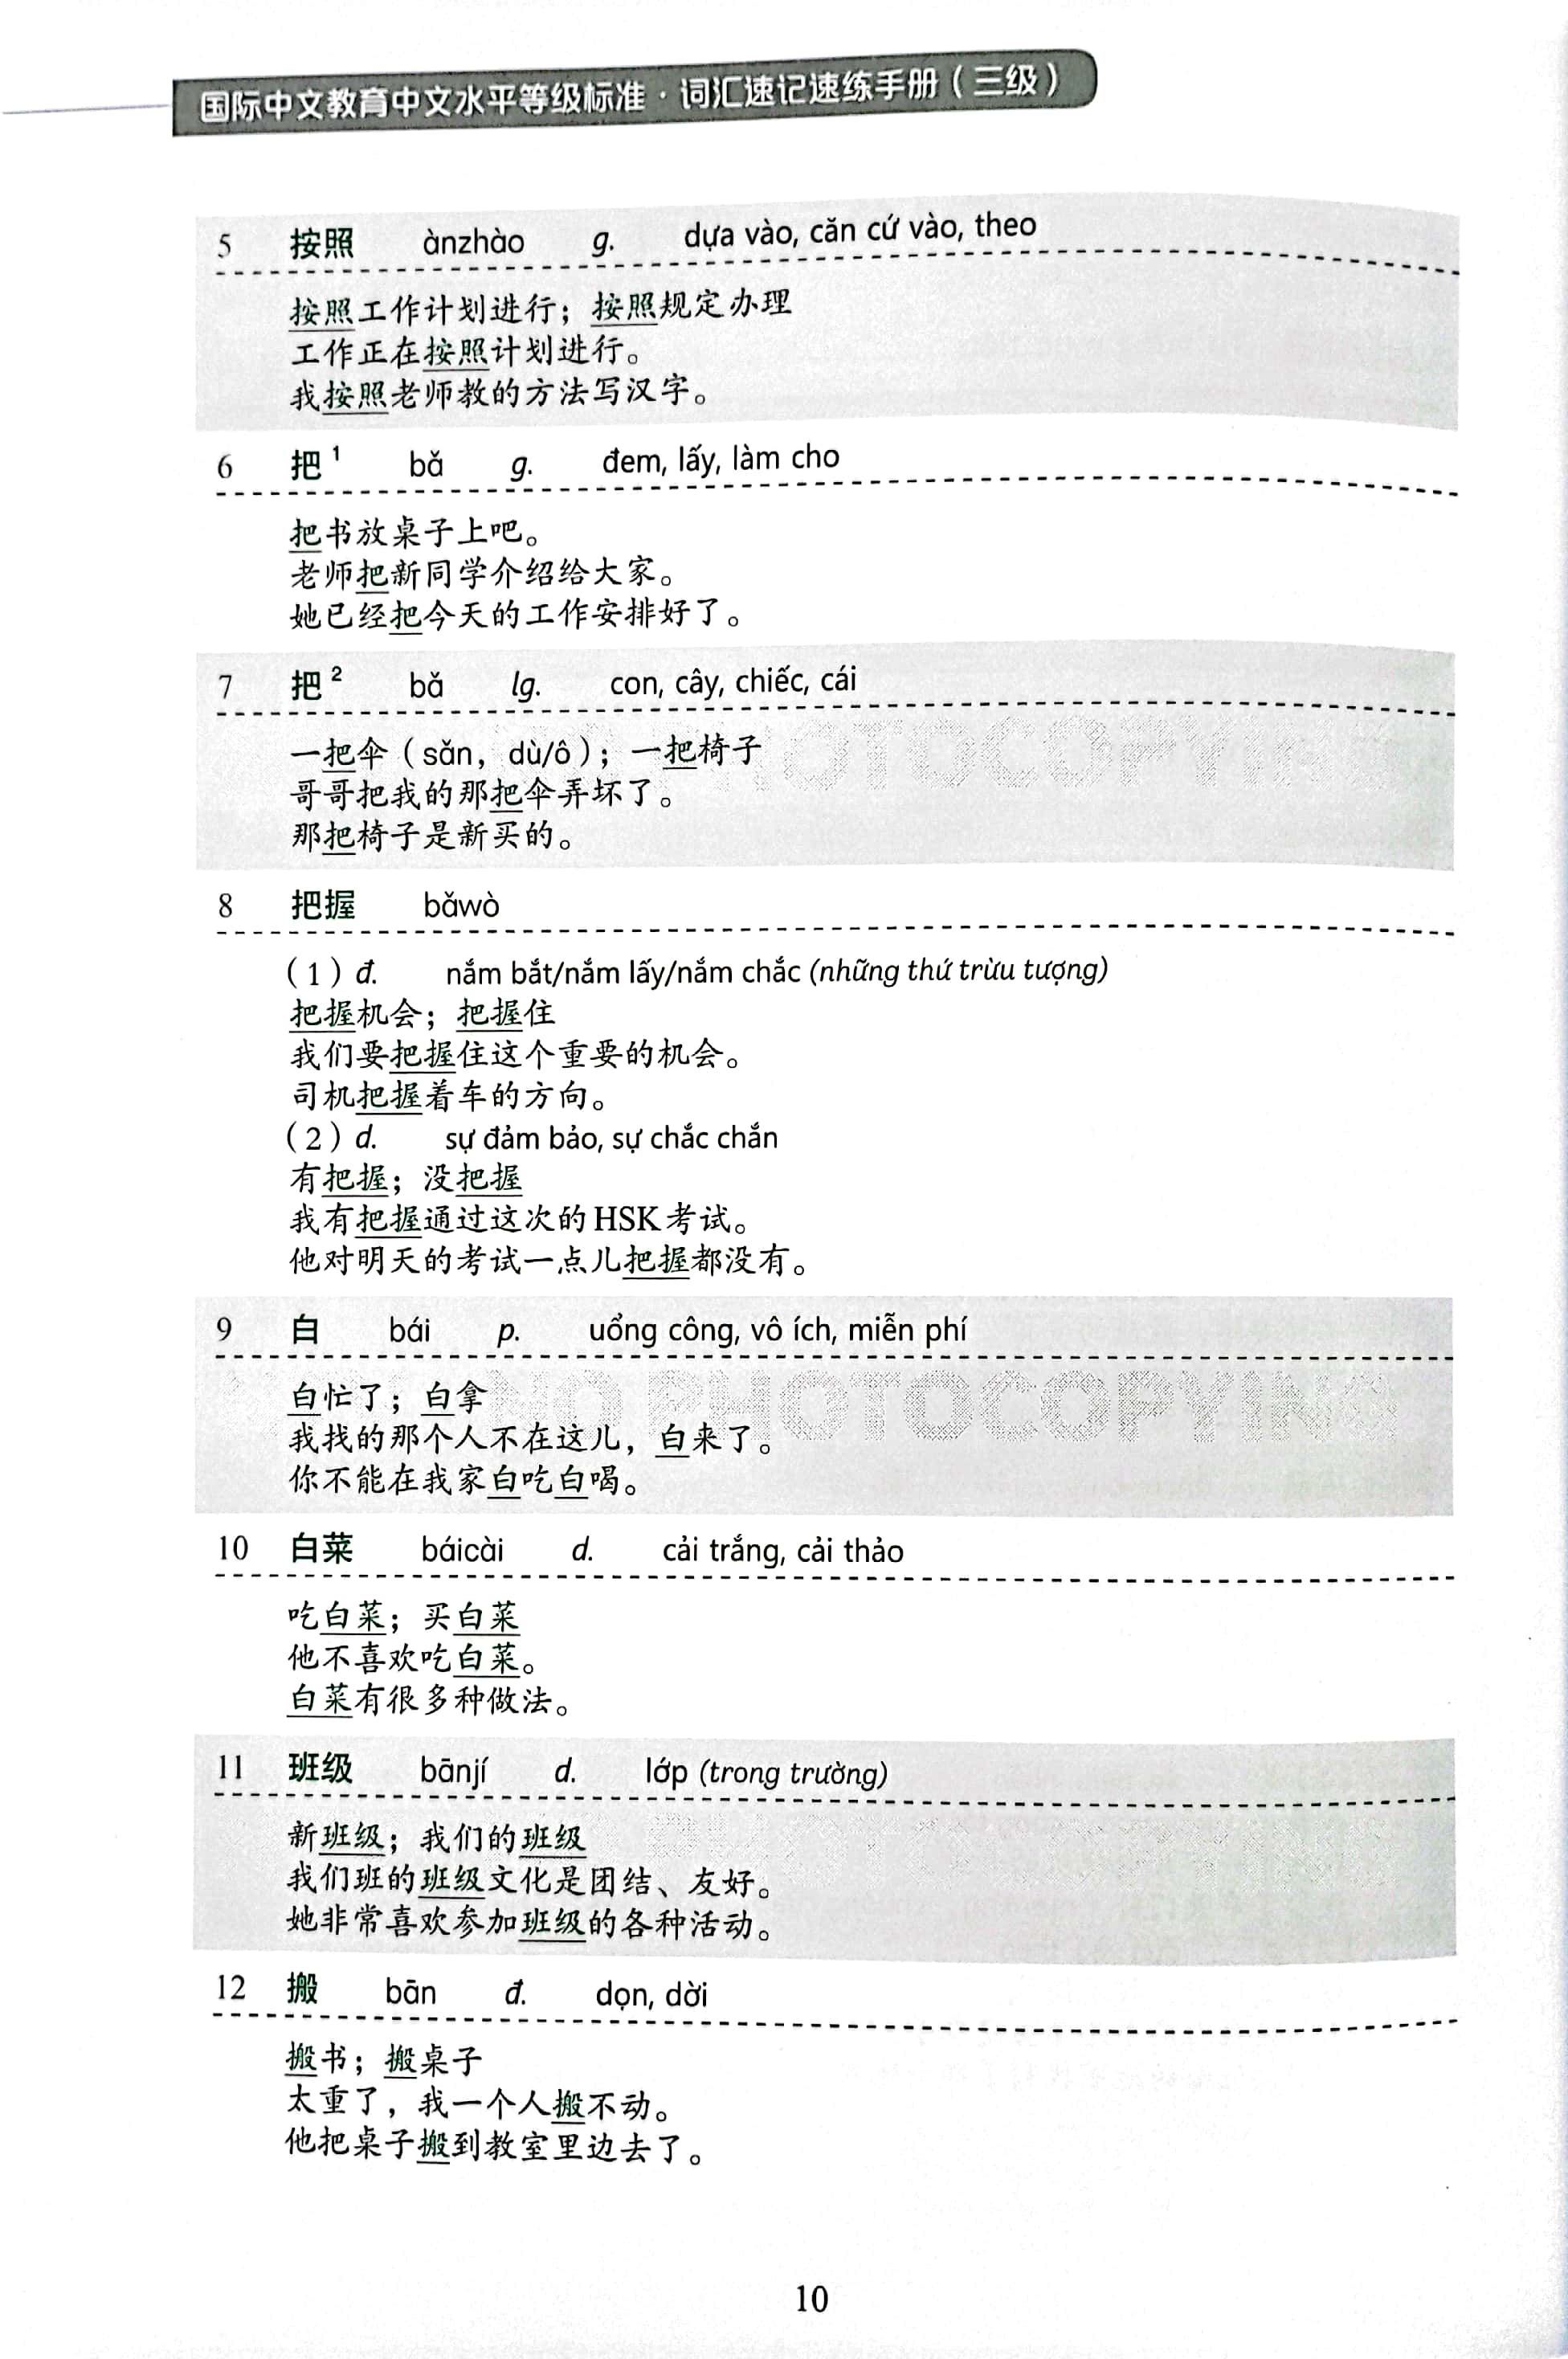 Tiêu Chuẩn Các Cấp Độ Tiếng Trung Trong Giáo Dục Tiếng Trung Quốc Tế - Giáo Trình Luyện Và Nhớ Nhanh Từ Vựng - Cấp Độ 3 PDF